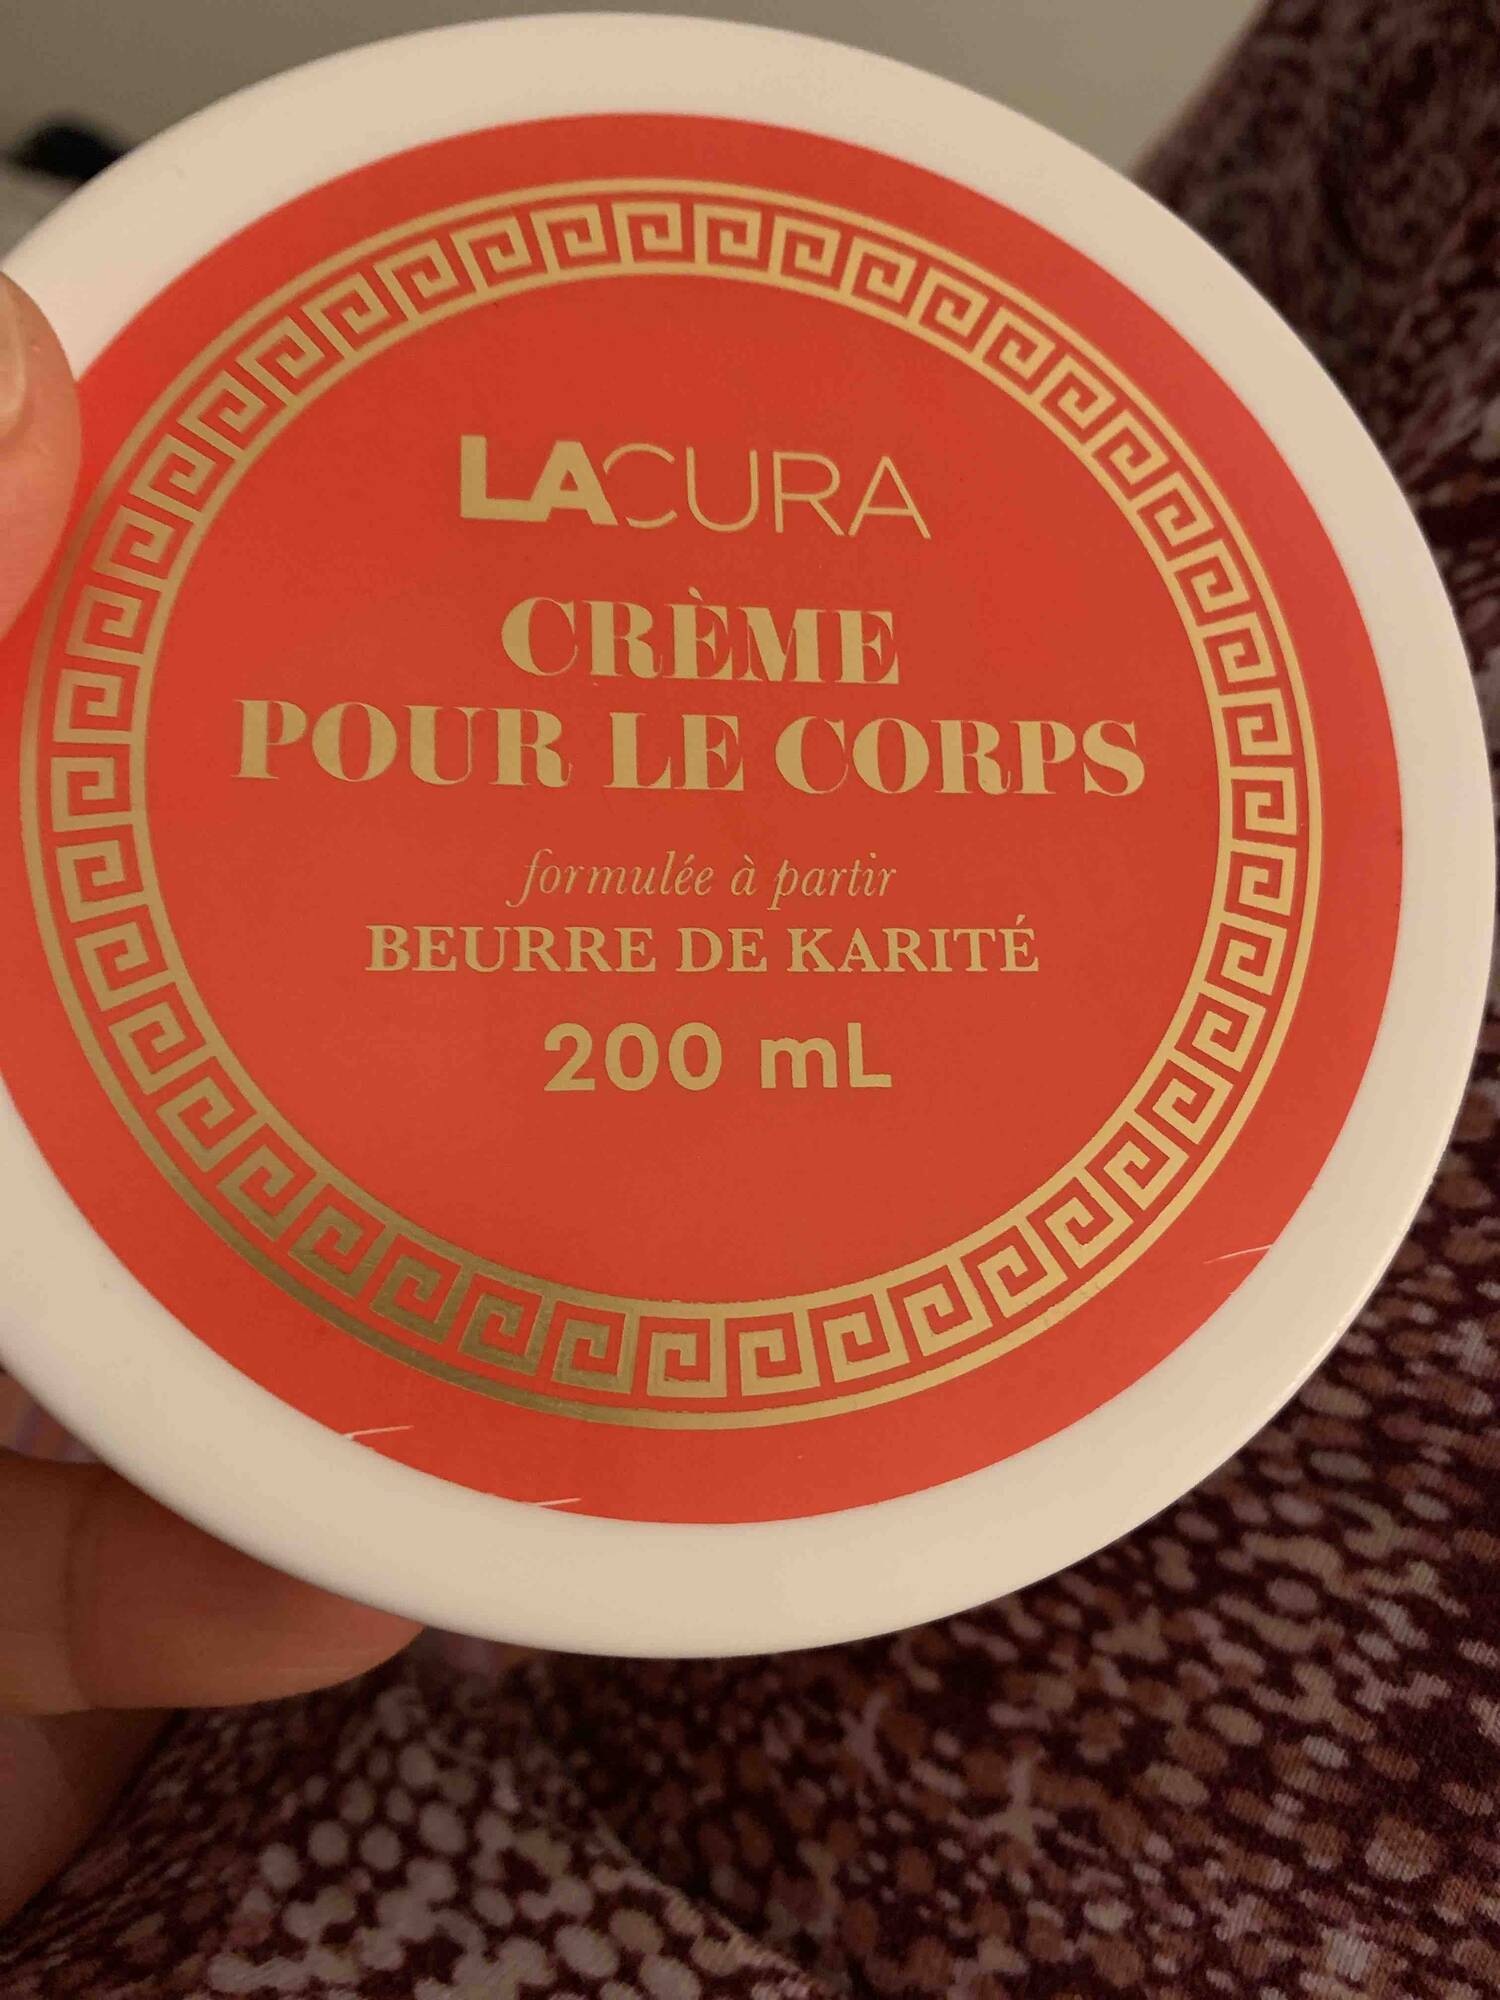 LACURA - Crème pour le corps beurre de karité